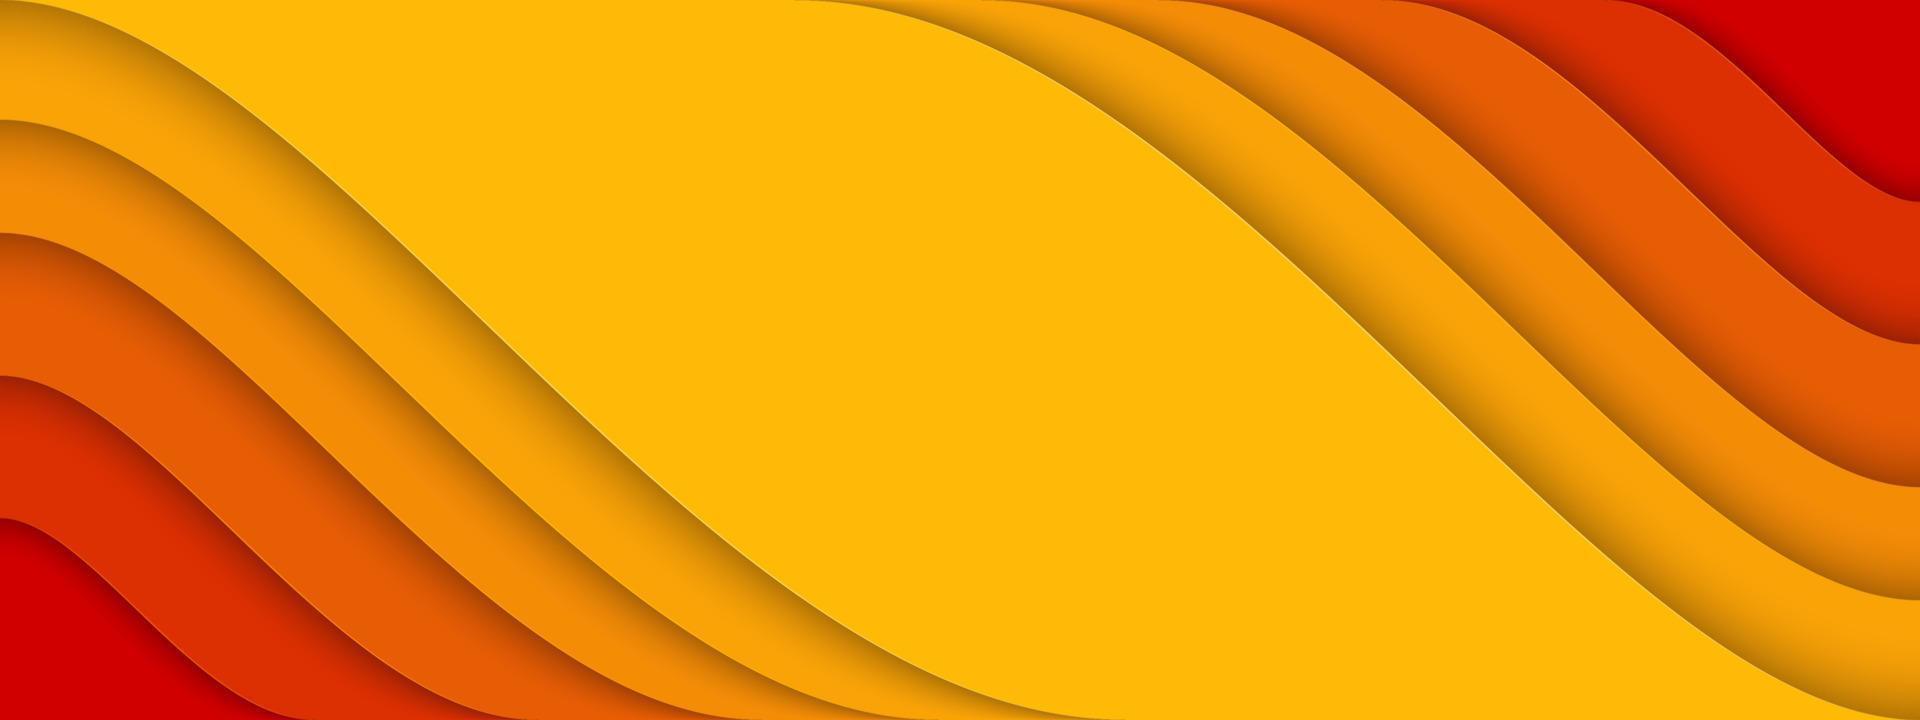 abstracte achtergrond met oranje en rode kleurencombinatie. modern minimalistisch achtergrondontwerp vector